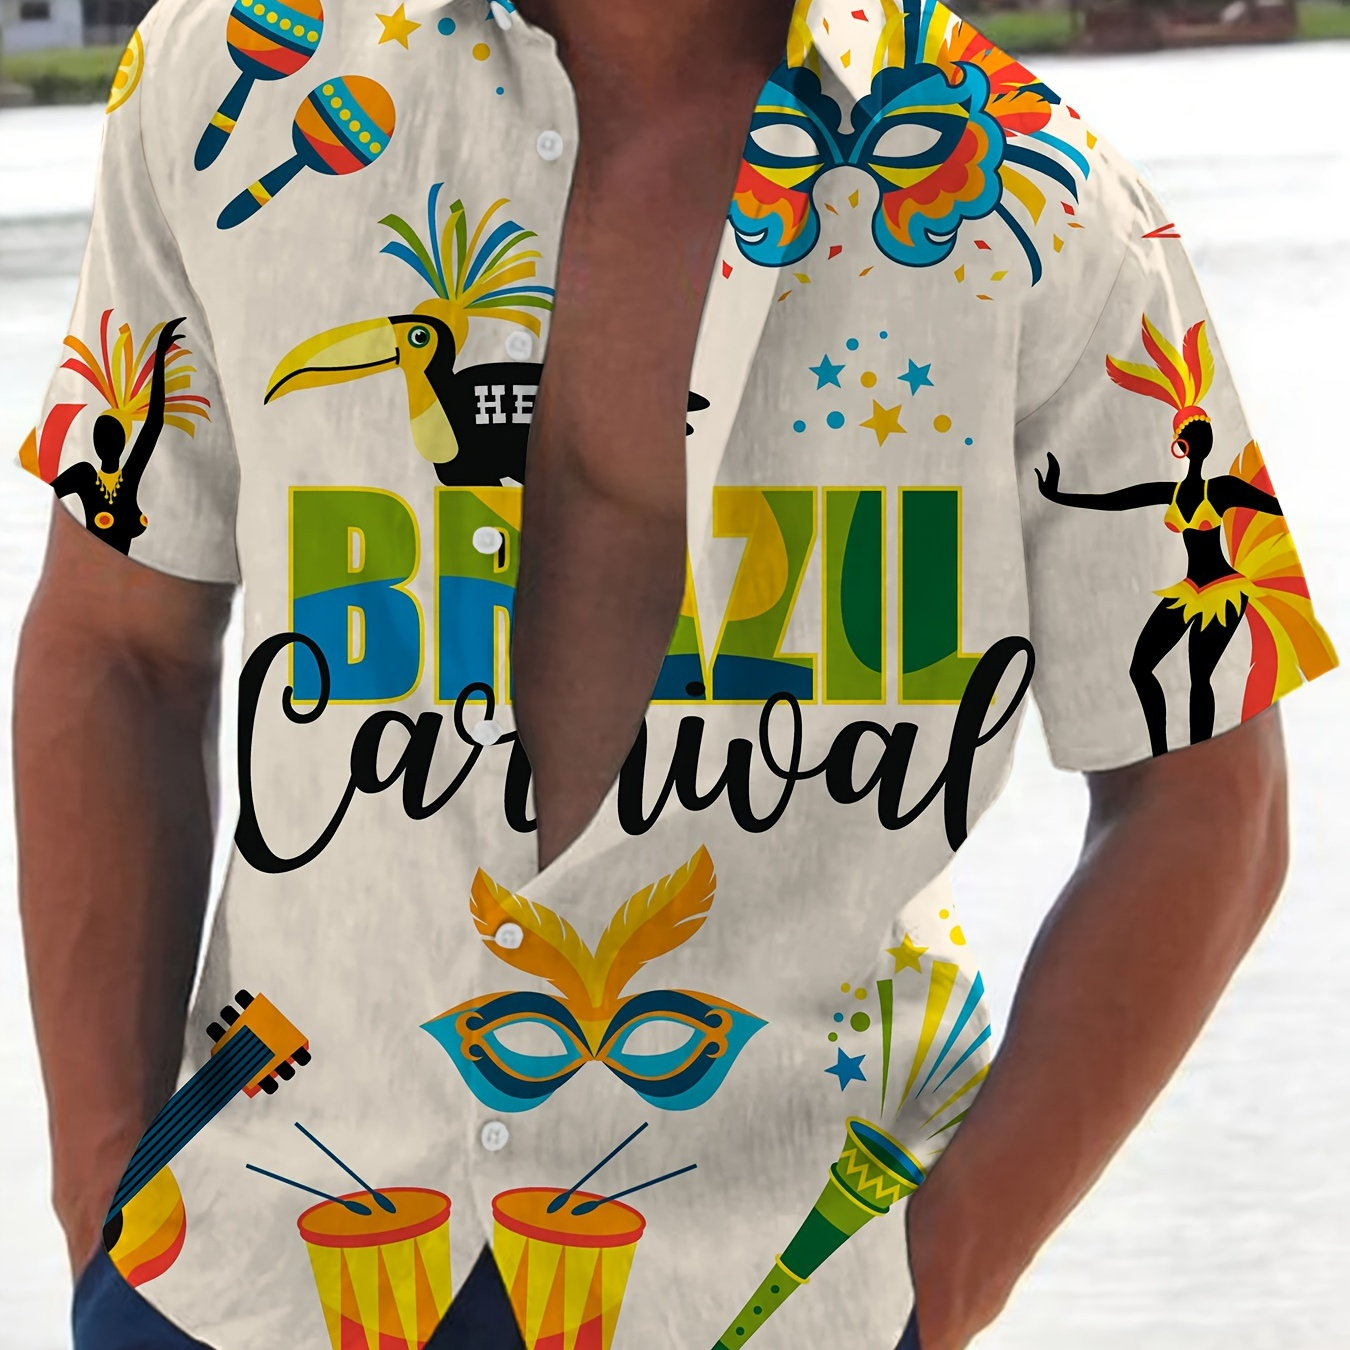 

Brazil Carnival And Mask Cartoon Pattern Men's Short Sleeve Button Down Shirt, Summer Resort Vacation, Men's Leisurewear